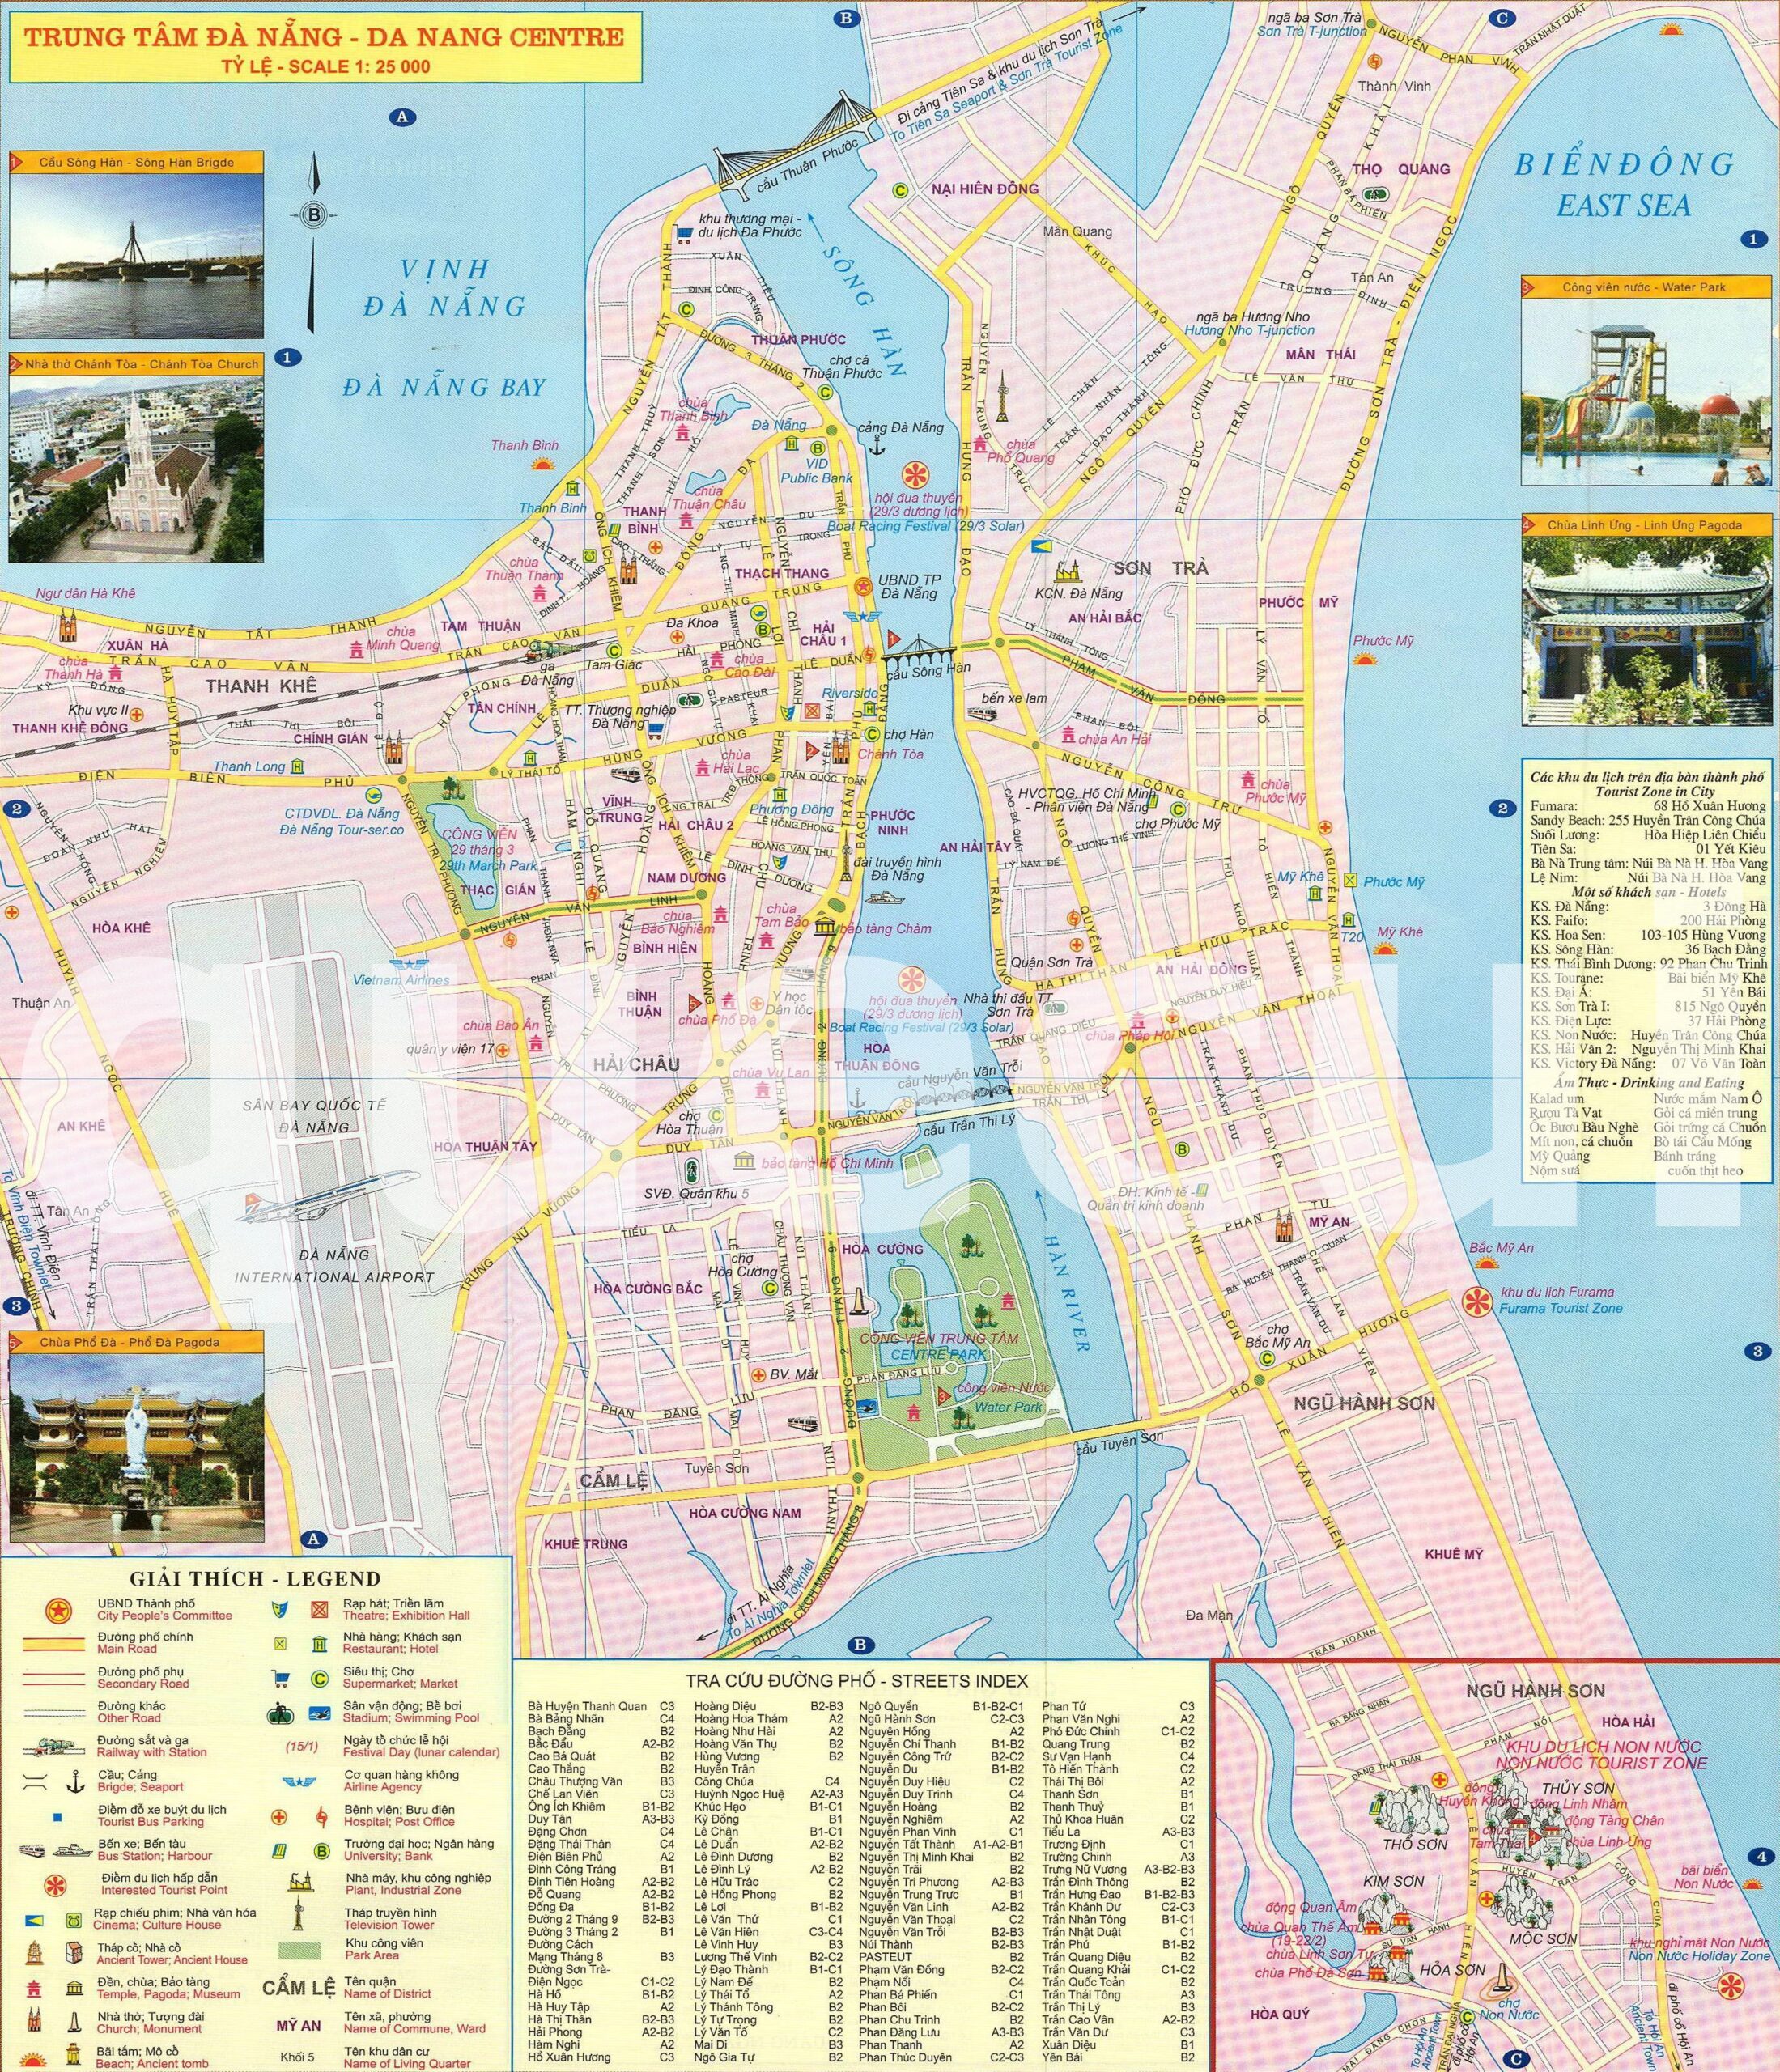 Với bản đồ hành chính Đà Nẵng năm 2024, bạn sẽ có cái nhìn toàn cảnh và cụ thể về thành phố hoa phượng đỏ này. Khám phá những khu vực mới được đầu tư và phát triển, và định hướng cho chuyến đi của mình trong tương lai.